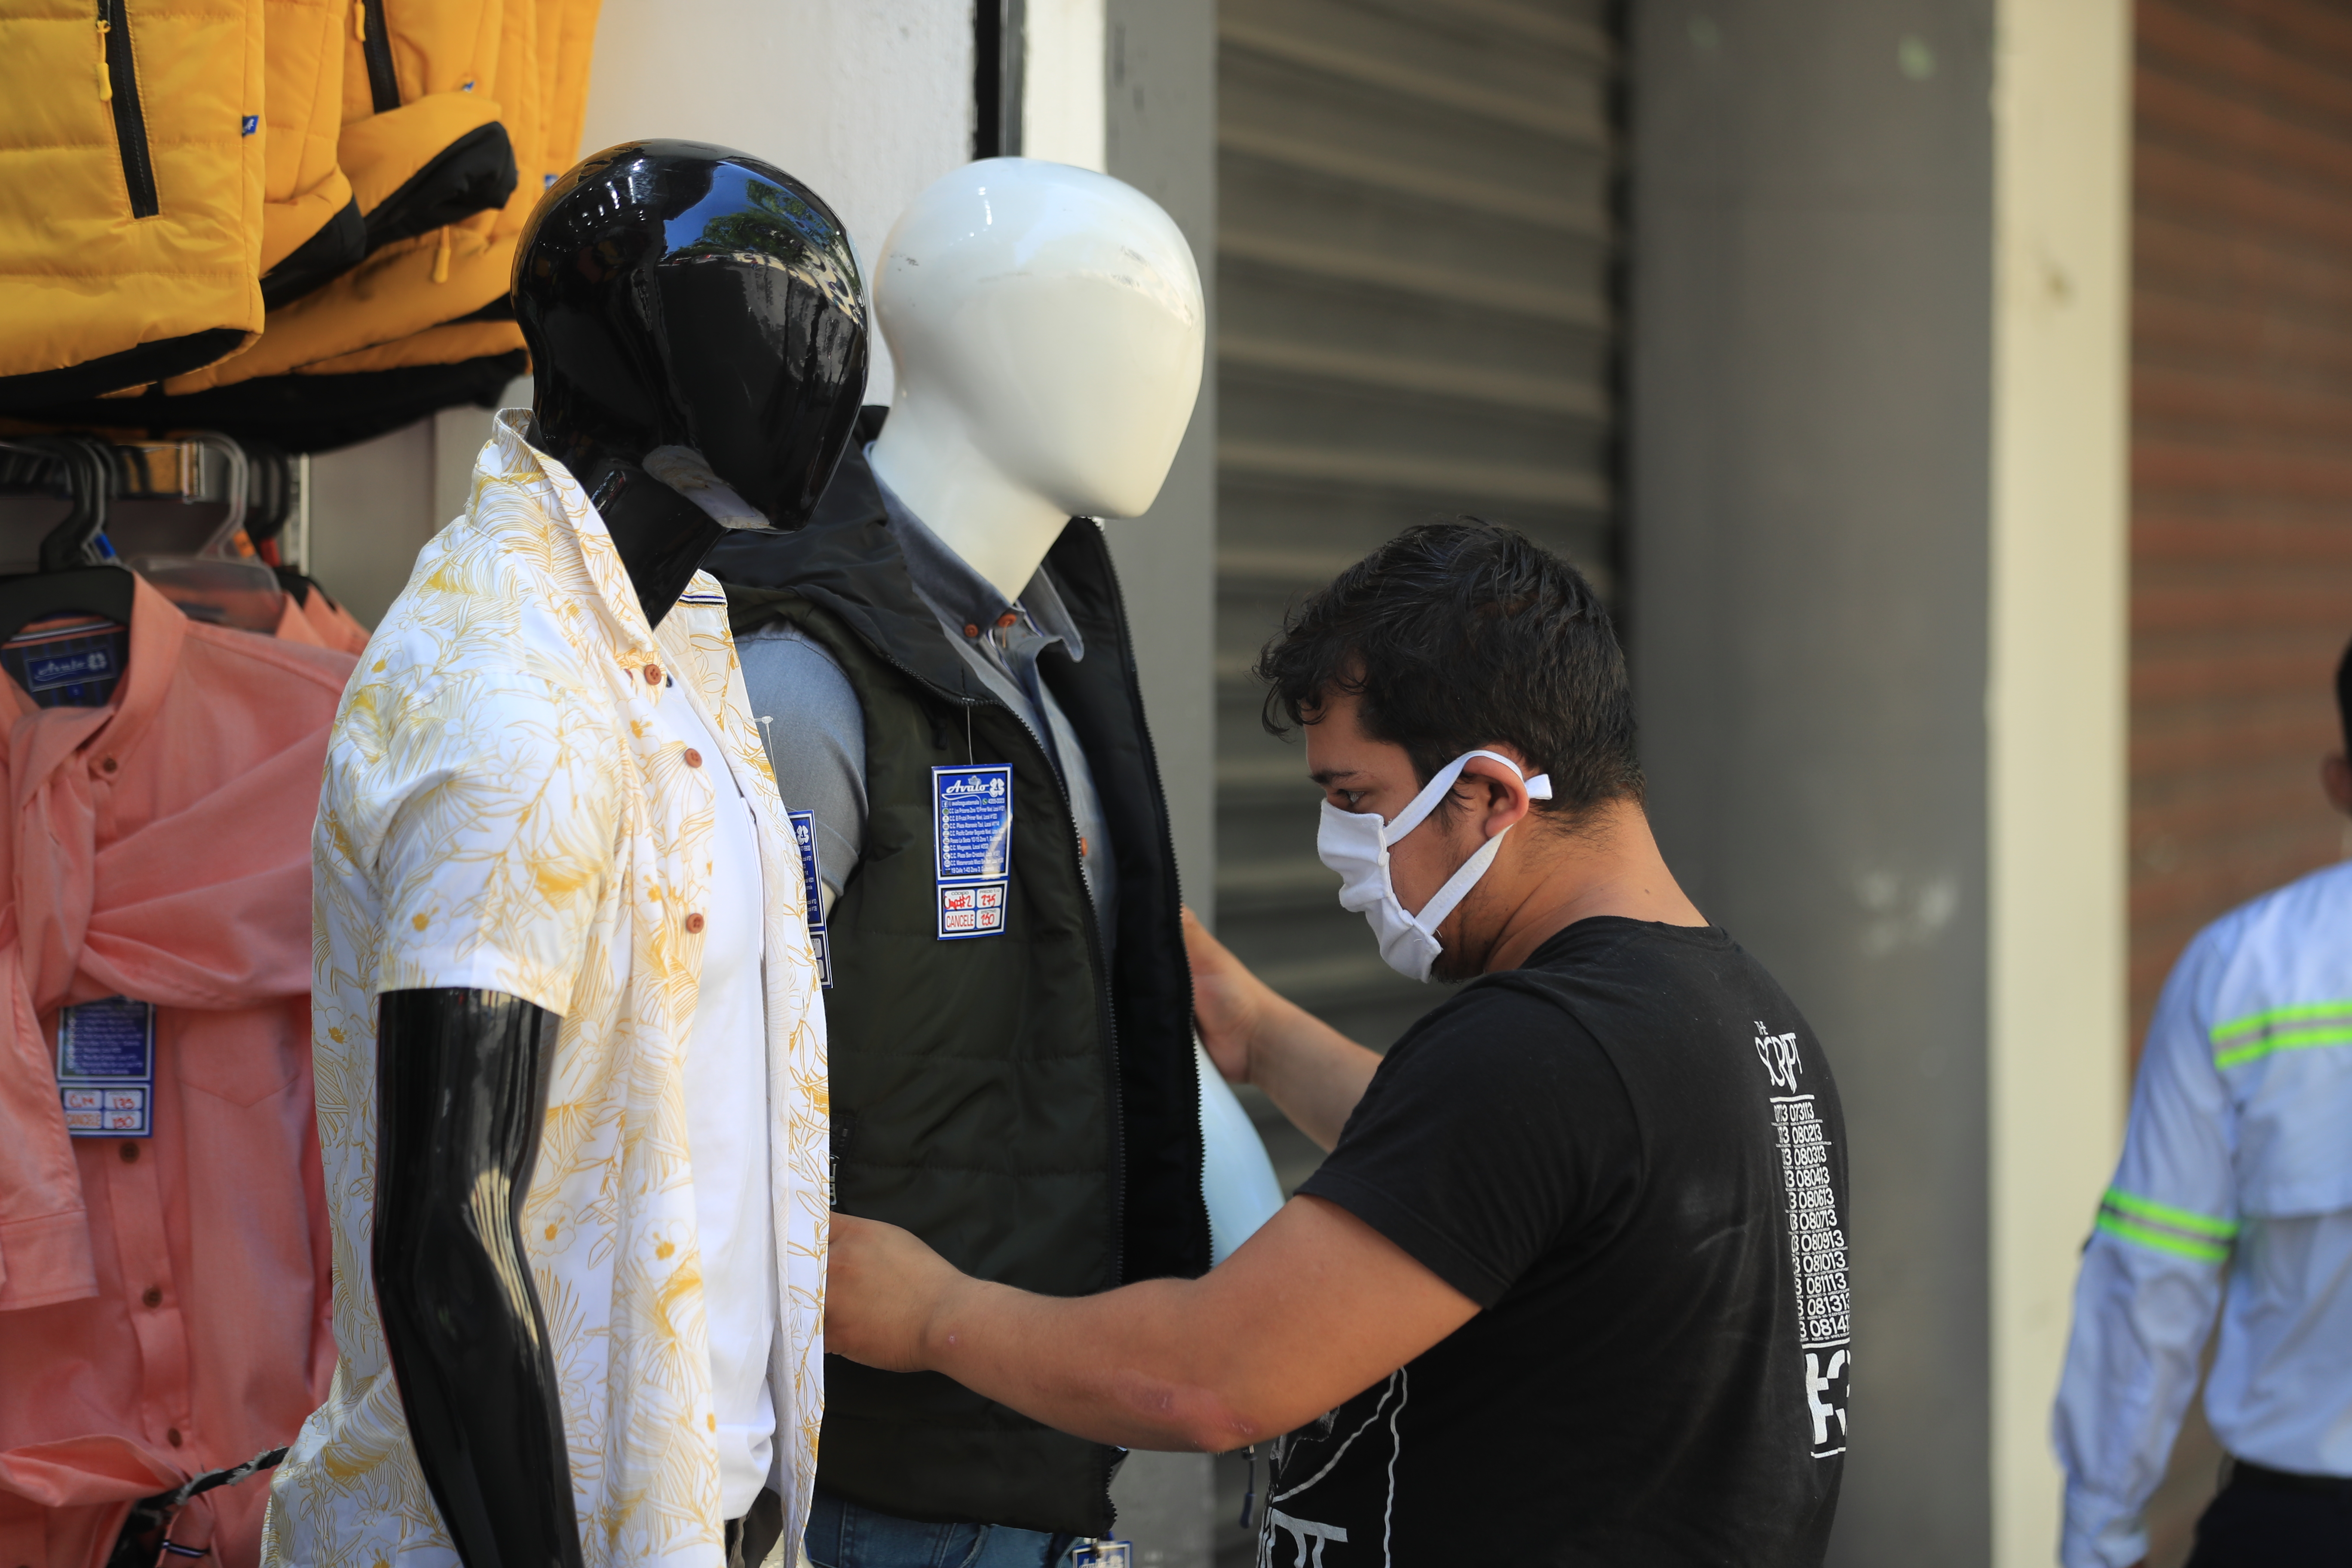 El efecto del coronavirus en Guatemala para las empresas será en una caída en ventas que impactará en el flujo de caja, señala el decano Helmuth Chávez de la Escuela de Negocios de la UFM. (Foto Prensa Libre: Hemeroteca) 